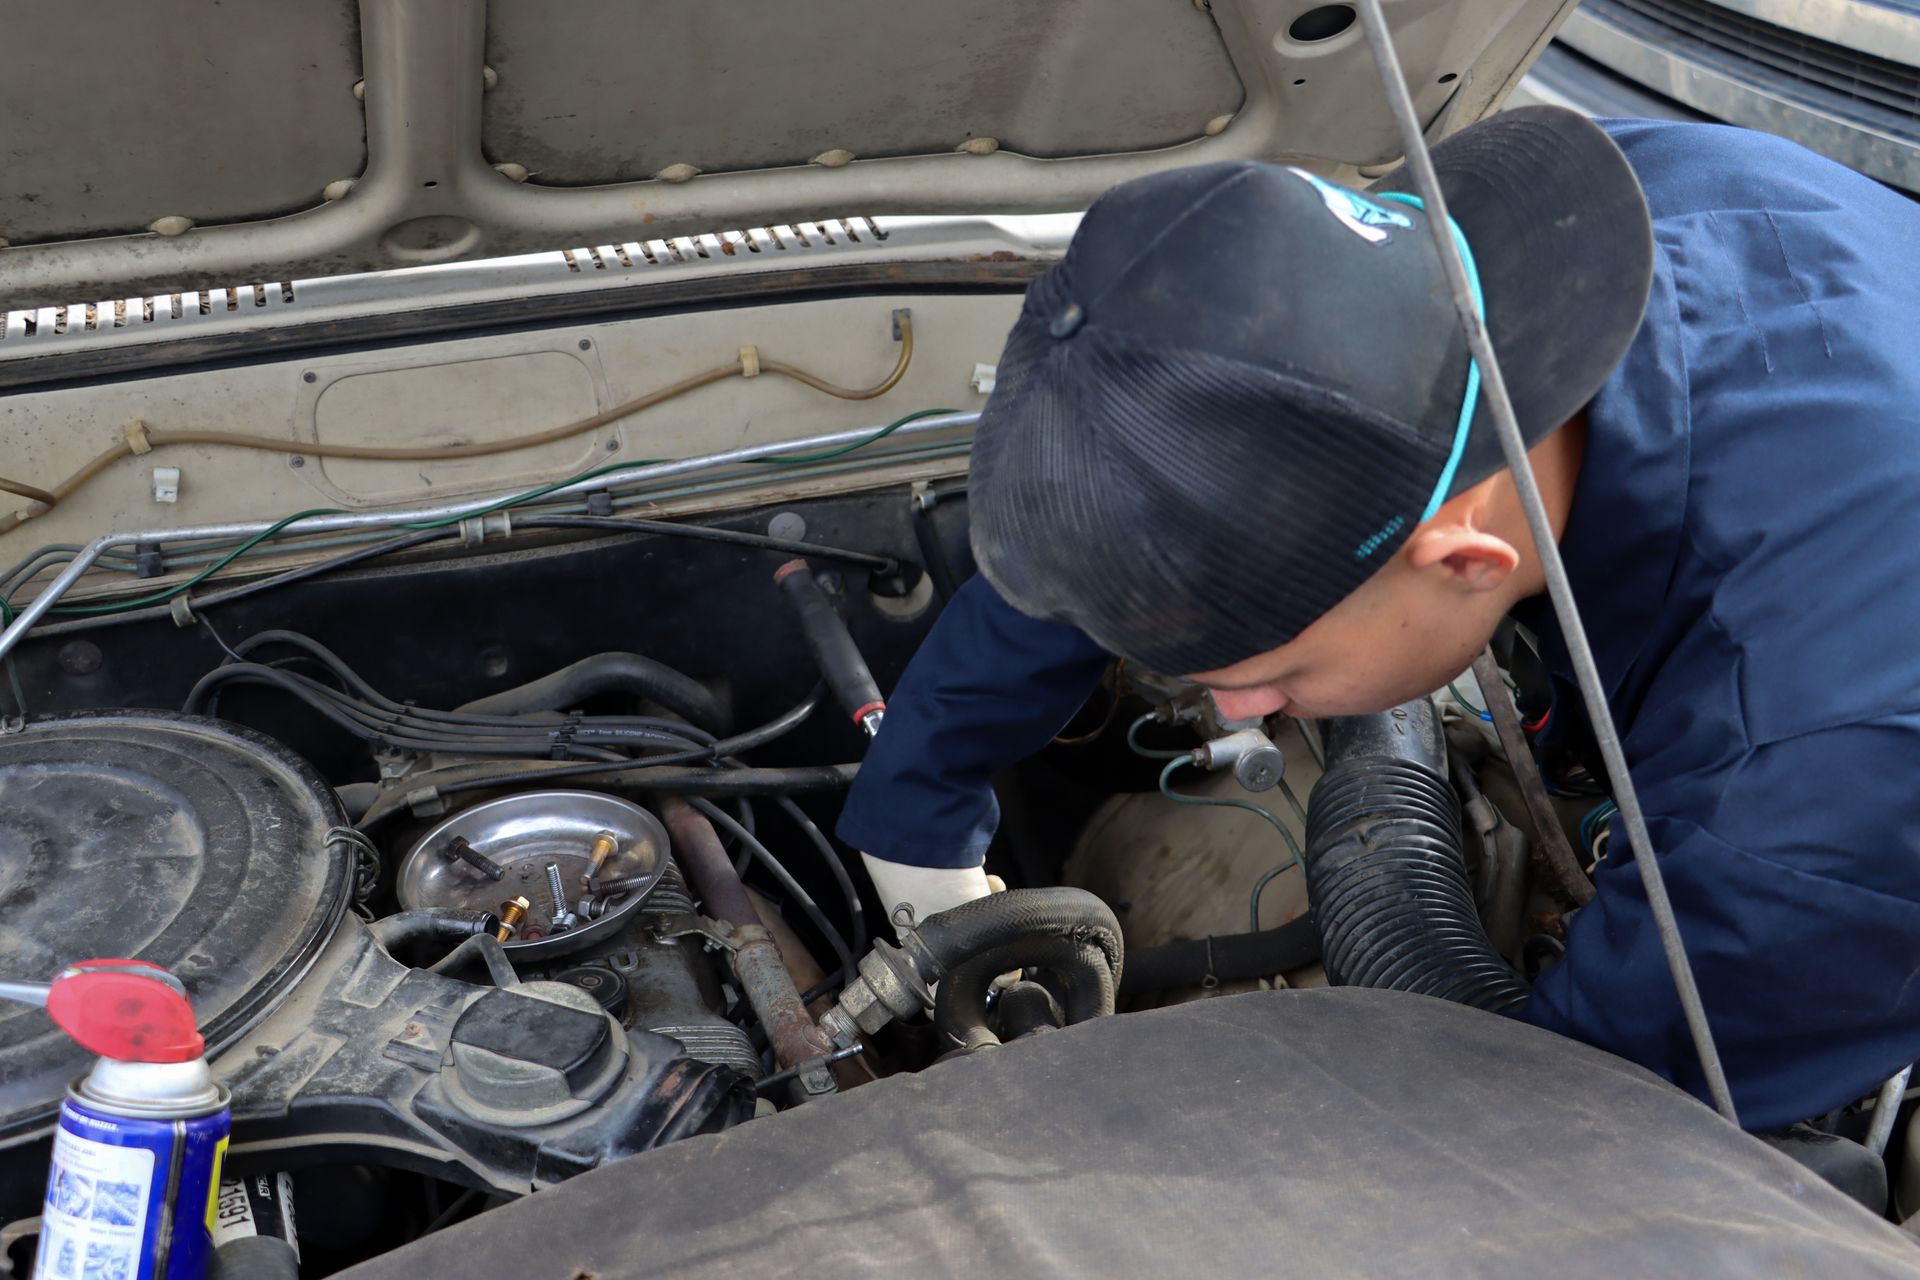 Moy inspecting hood of vehicle